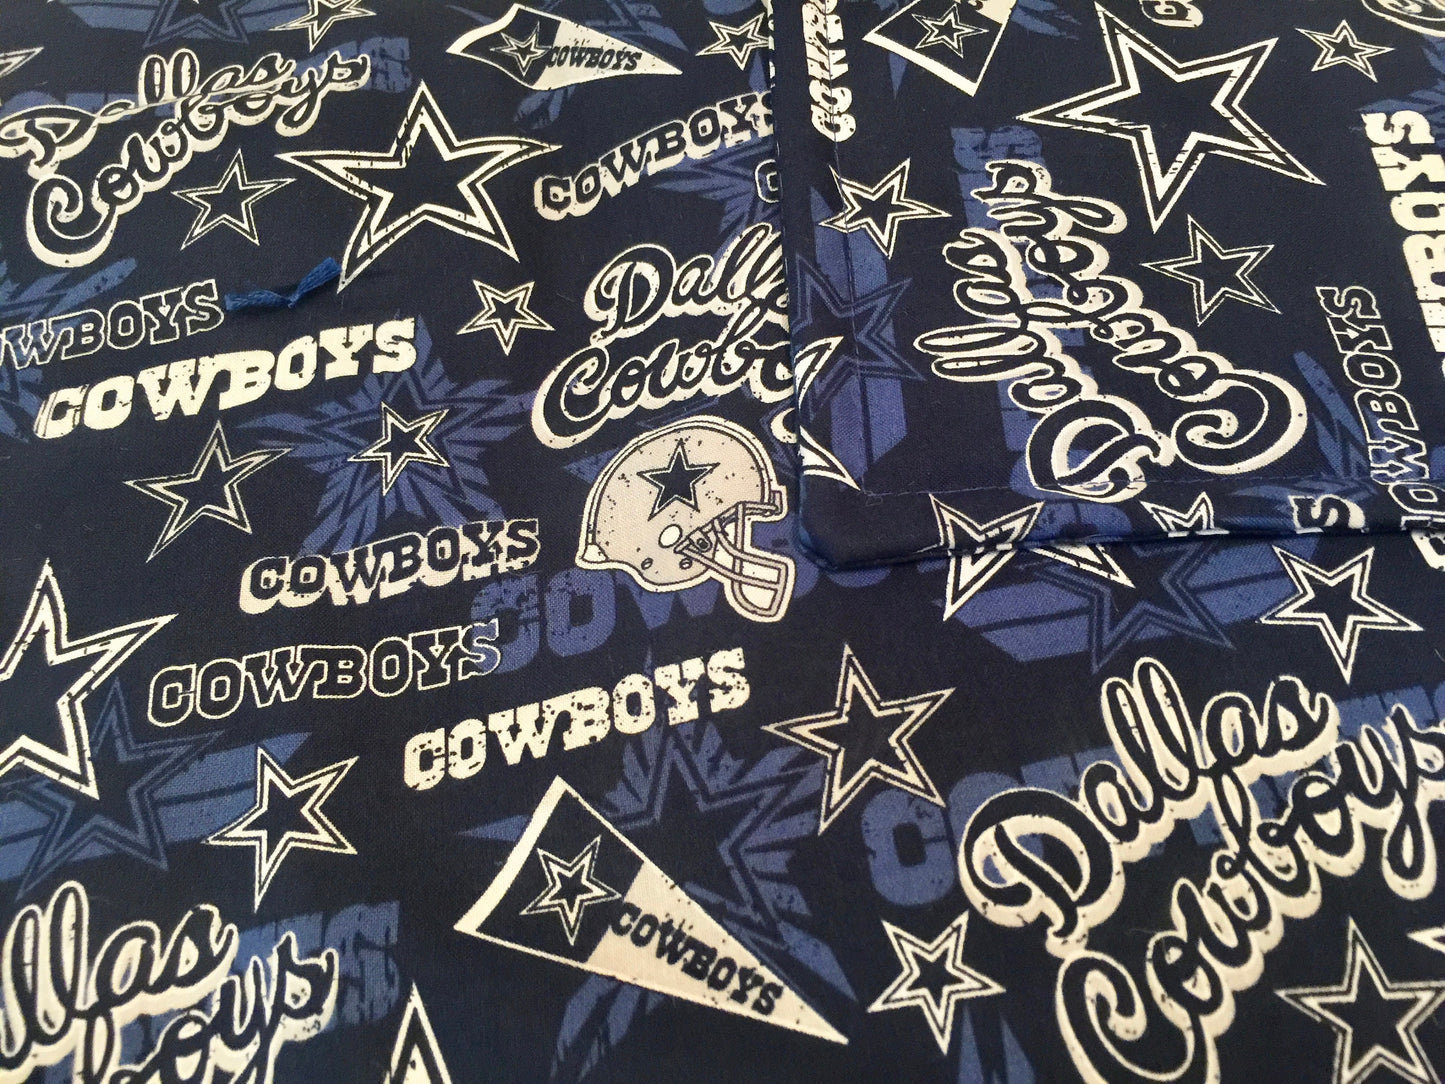 Dallas Cowboy Designer blanket or bedspread